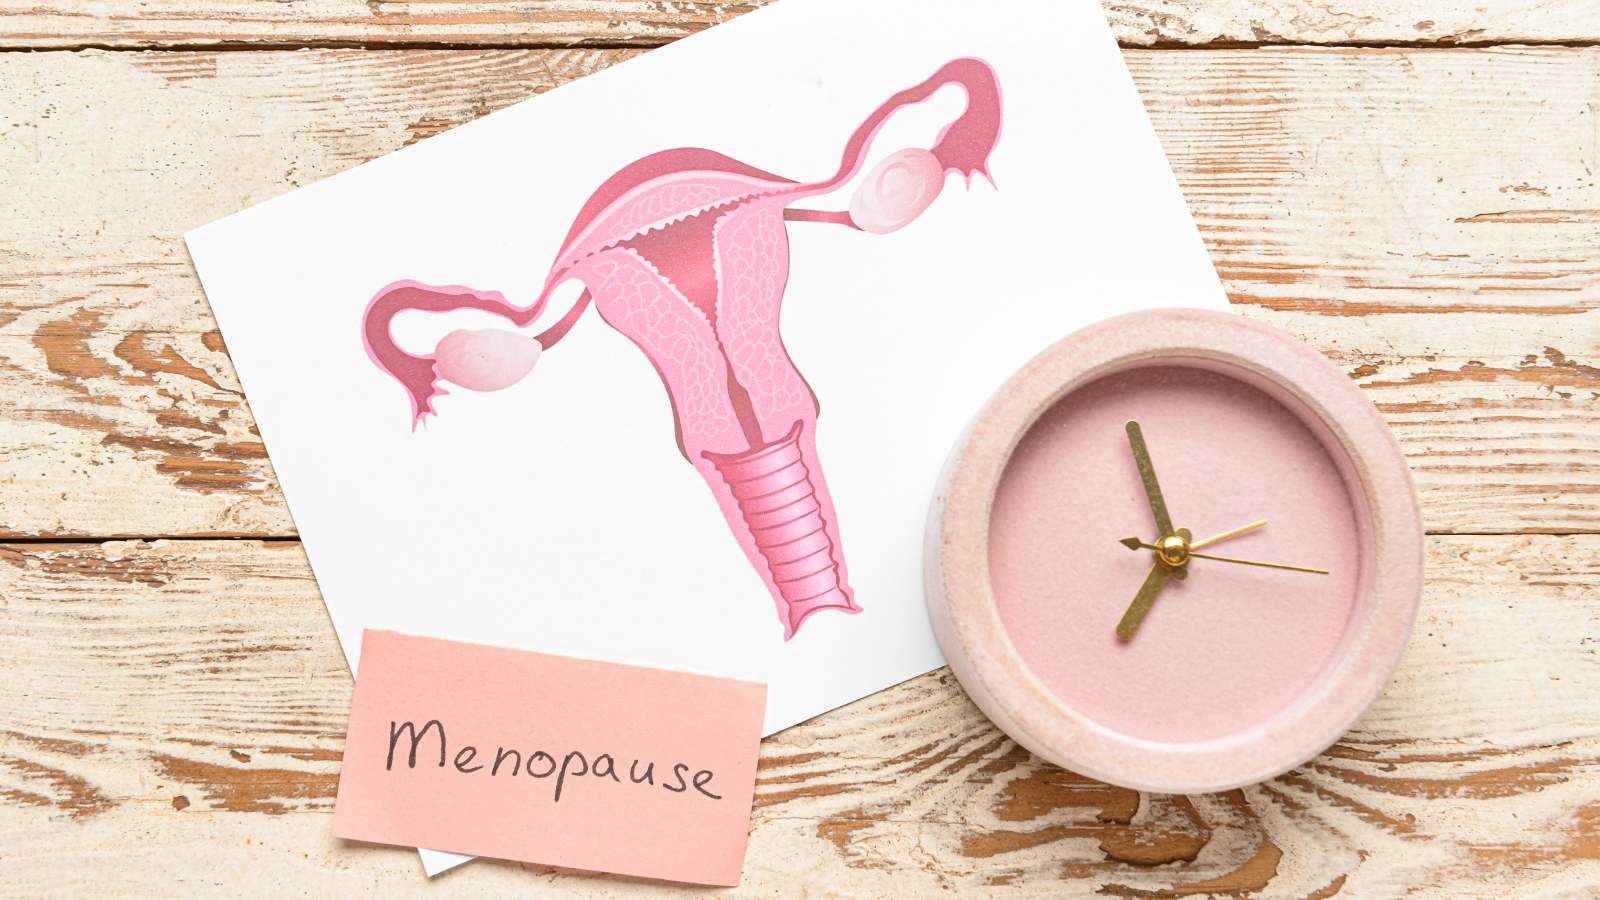 menopause mei protein, मेनोपॉज में प्रोटीन कितना जरूरी है 